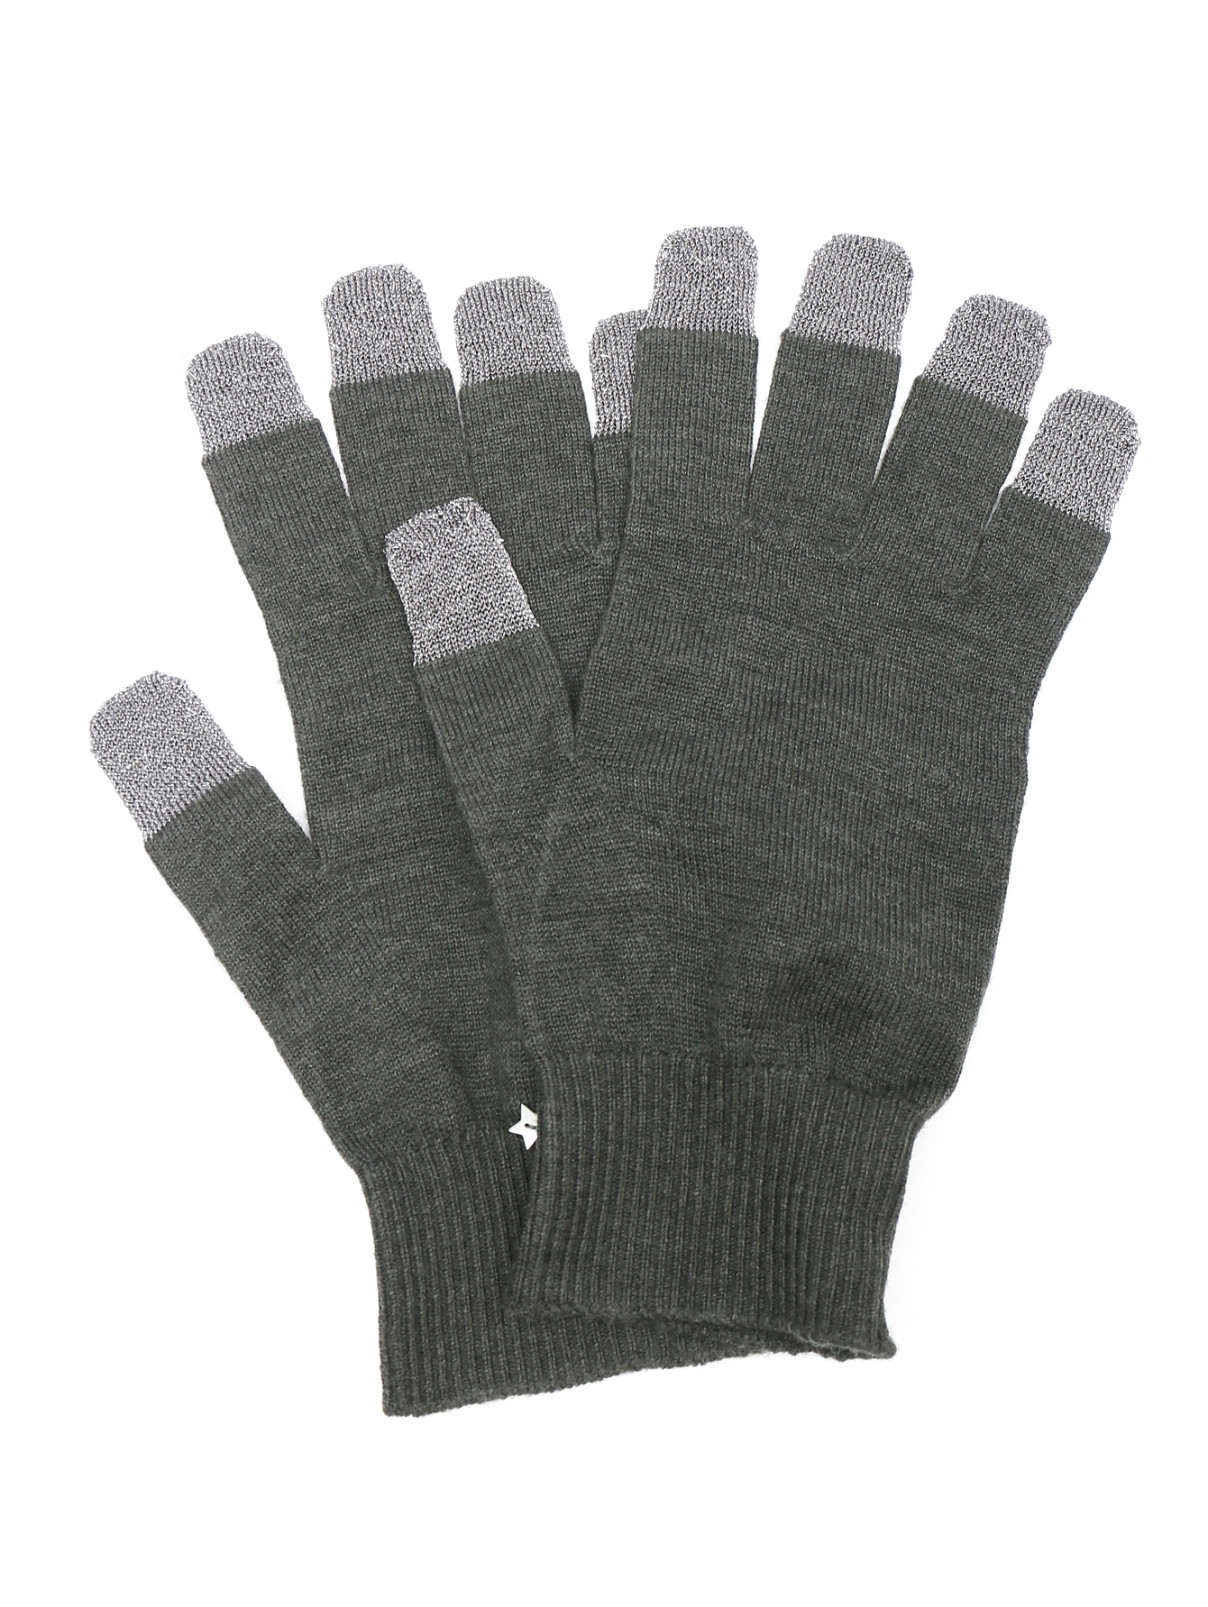 Перчатки из смешанной шерсти Lorena Antoniazzi  –  Общий вид  – Цвет:  Серый